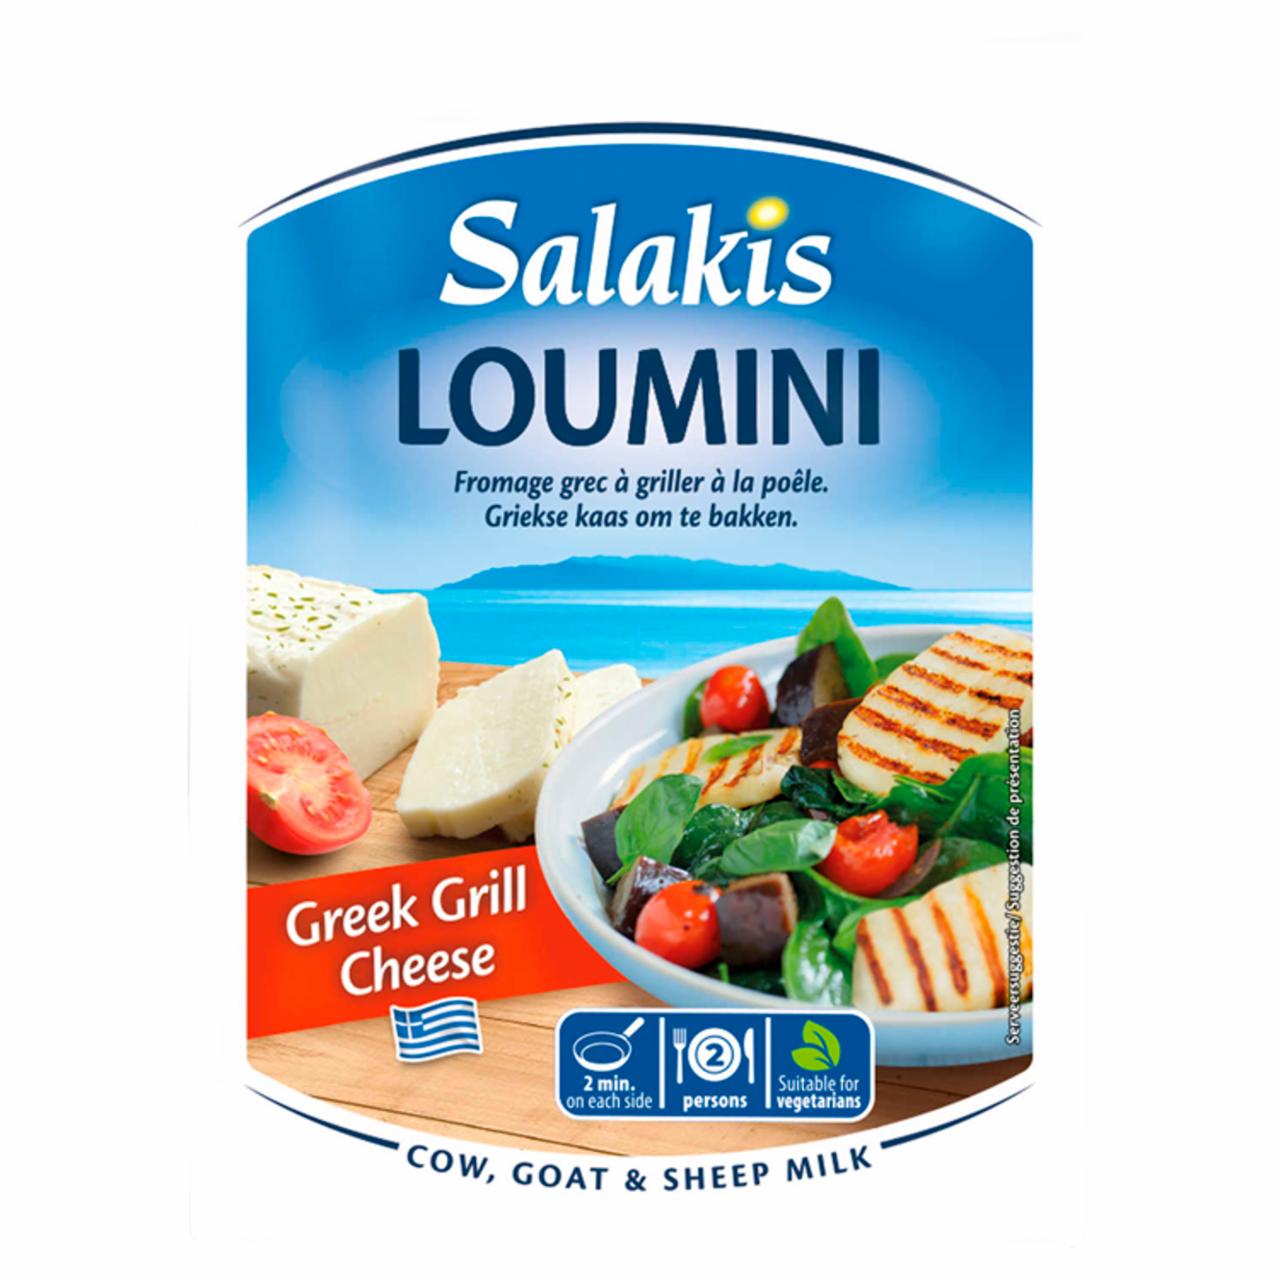 Képek - Salakis Loumini zsíros, félkemény sajt kevert tejből, grillezéshez 225 g